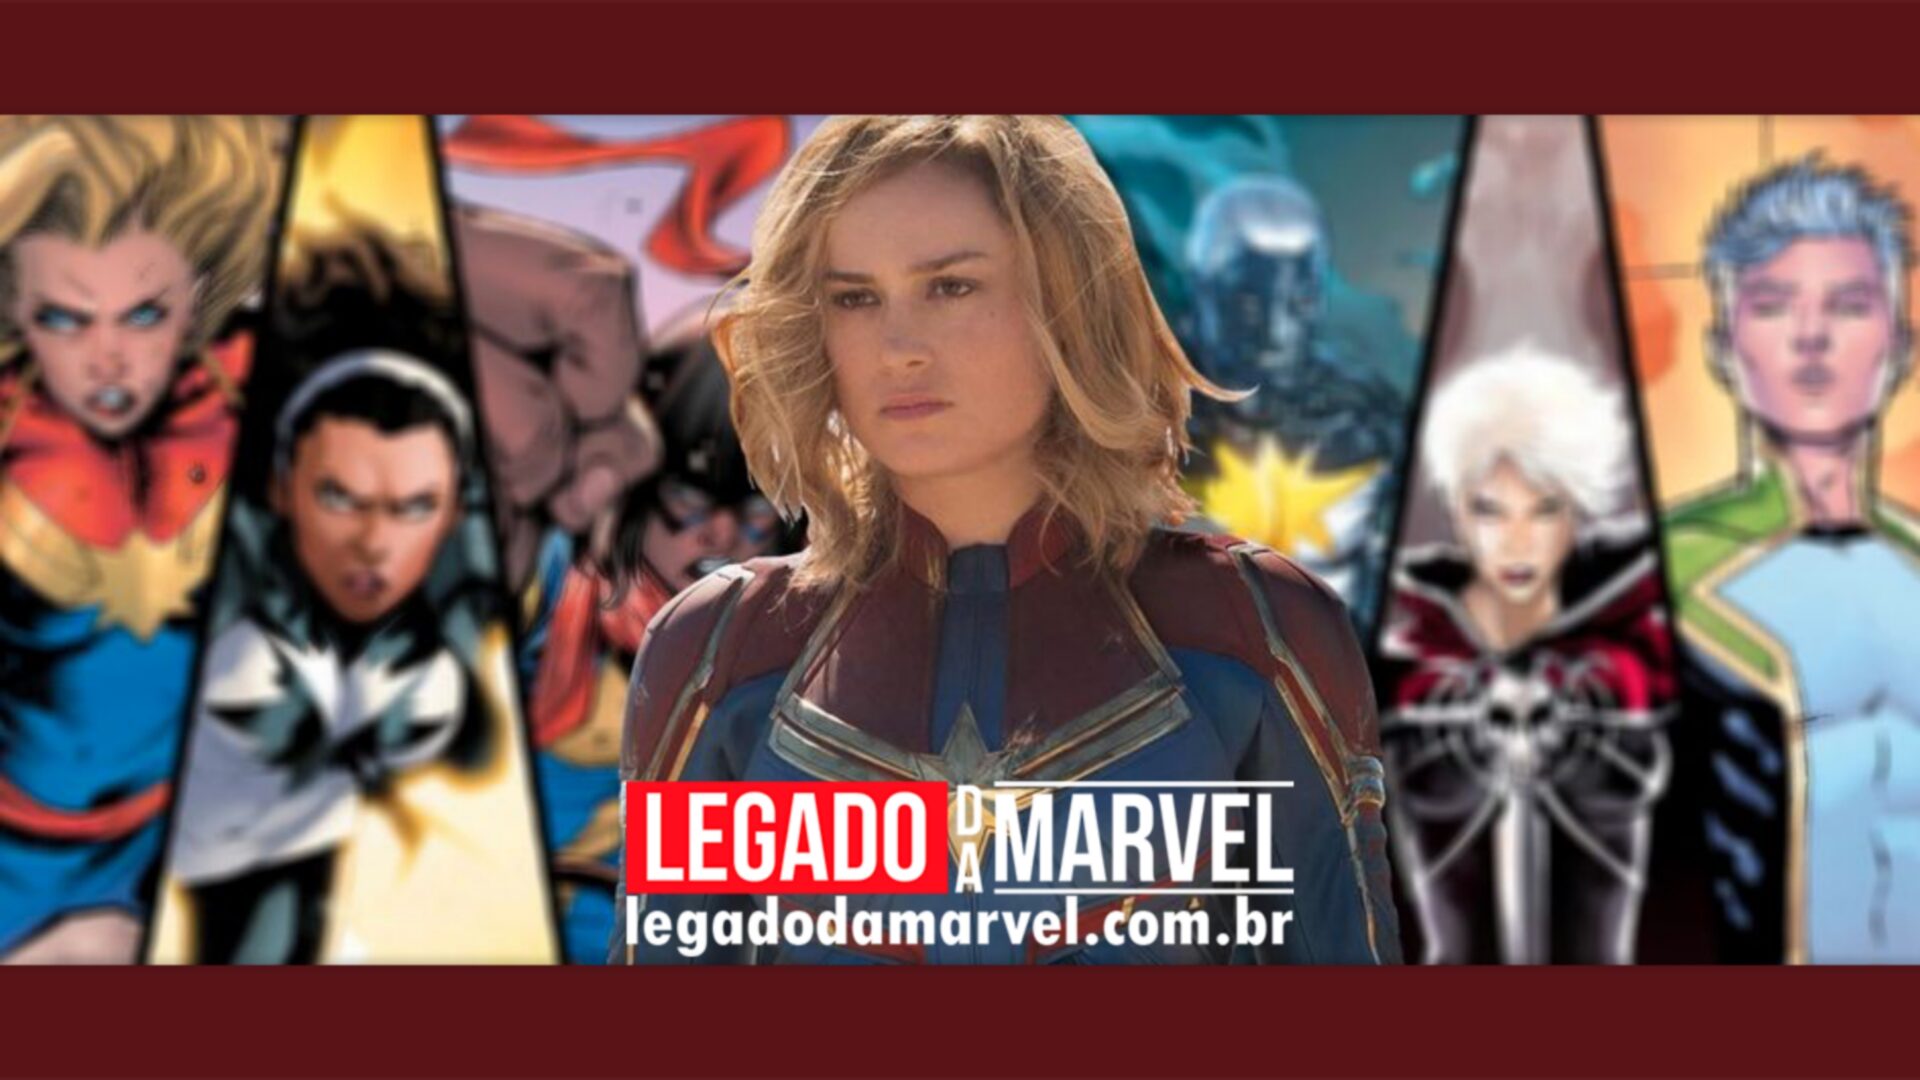  Capitã Marvel 2: Nova foto mostra a heroína junto com a vilã do filme